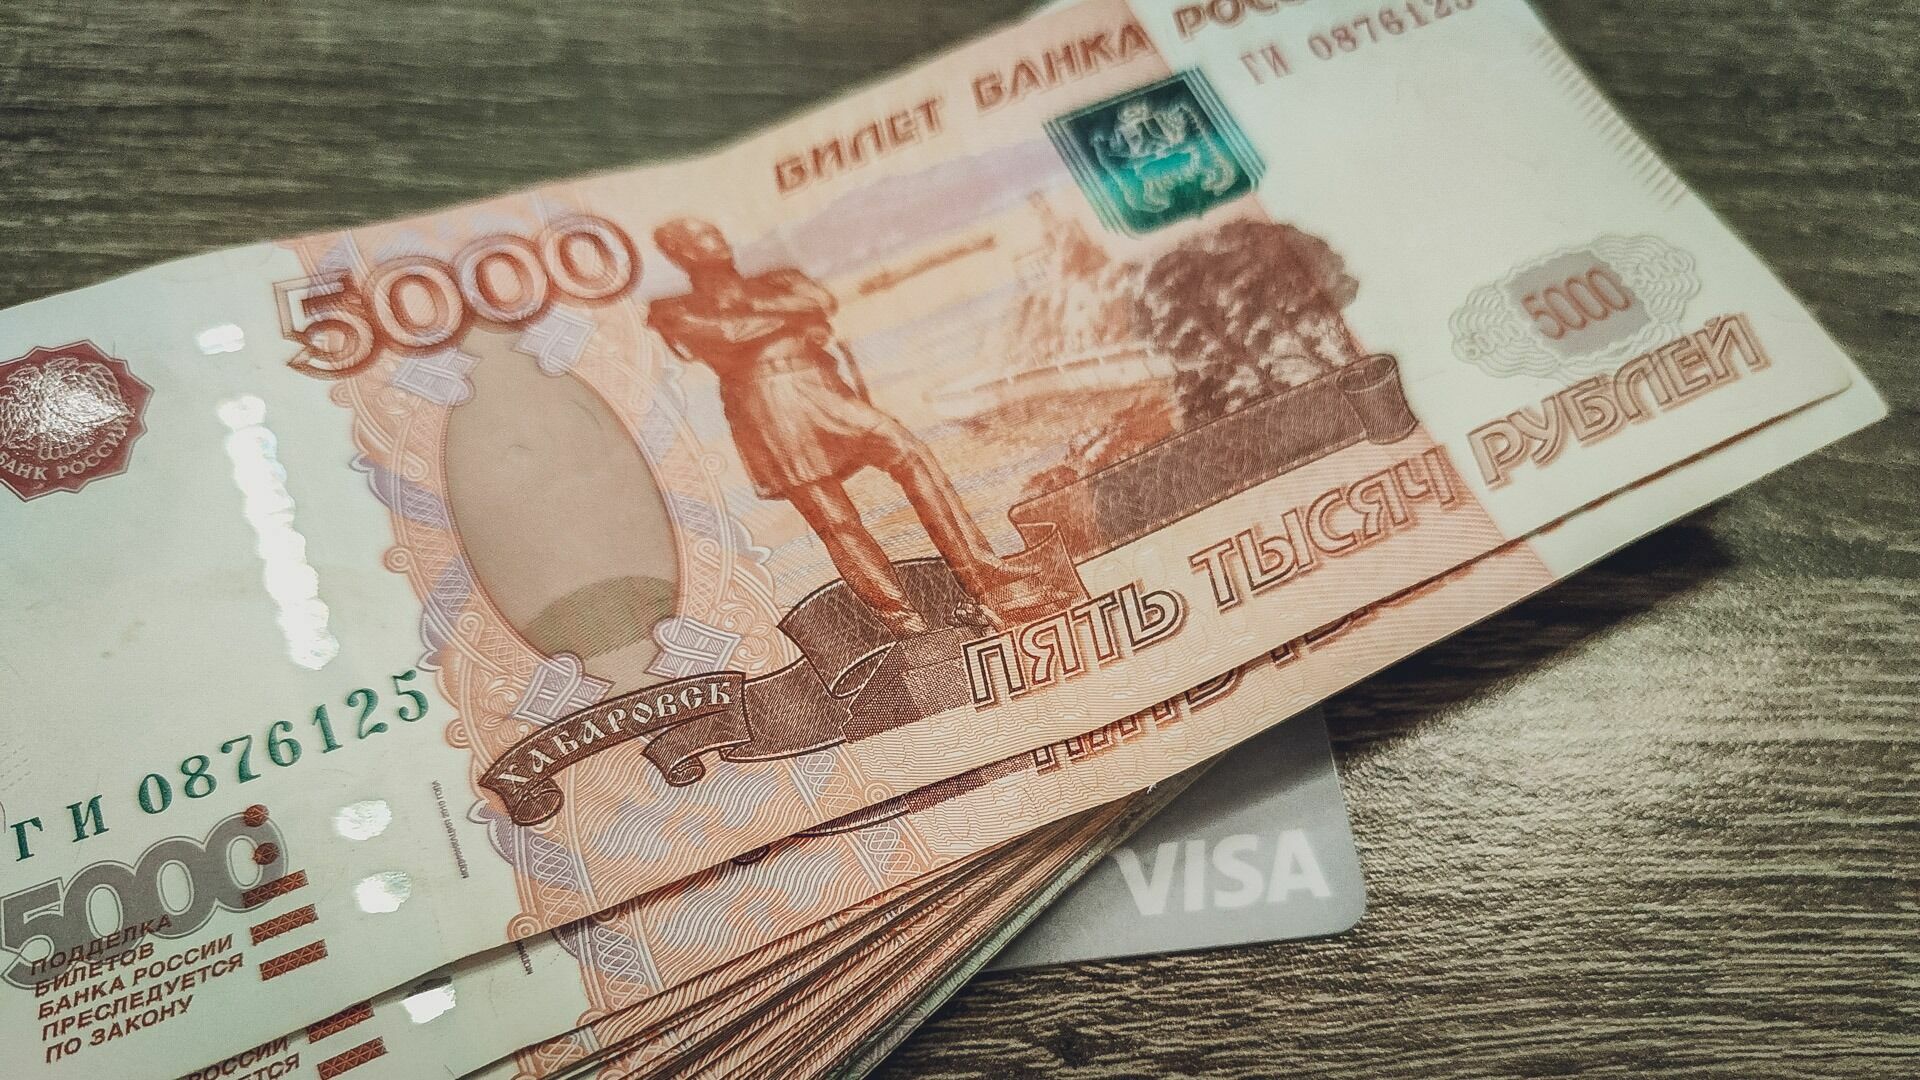 Работникам предприятия под Челябинском выдали расчетные листы без зарплаты